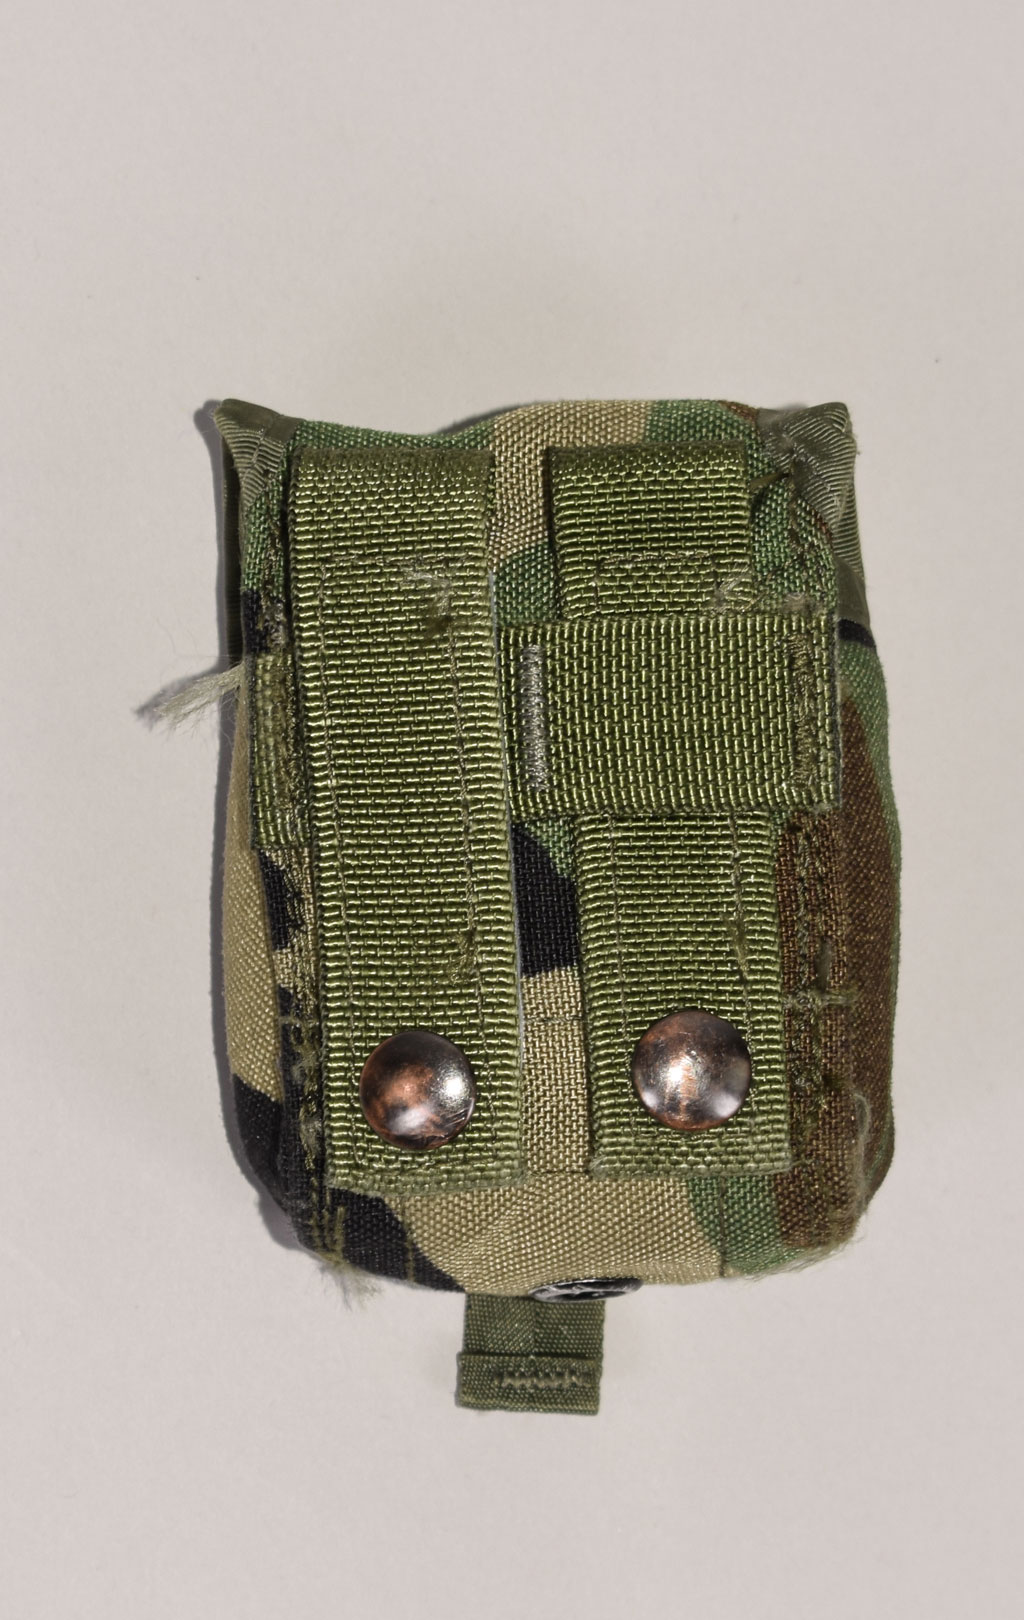 Подсумок гранатный Hand Grenade MOLLE camo woodland б/у США